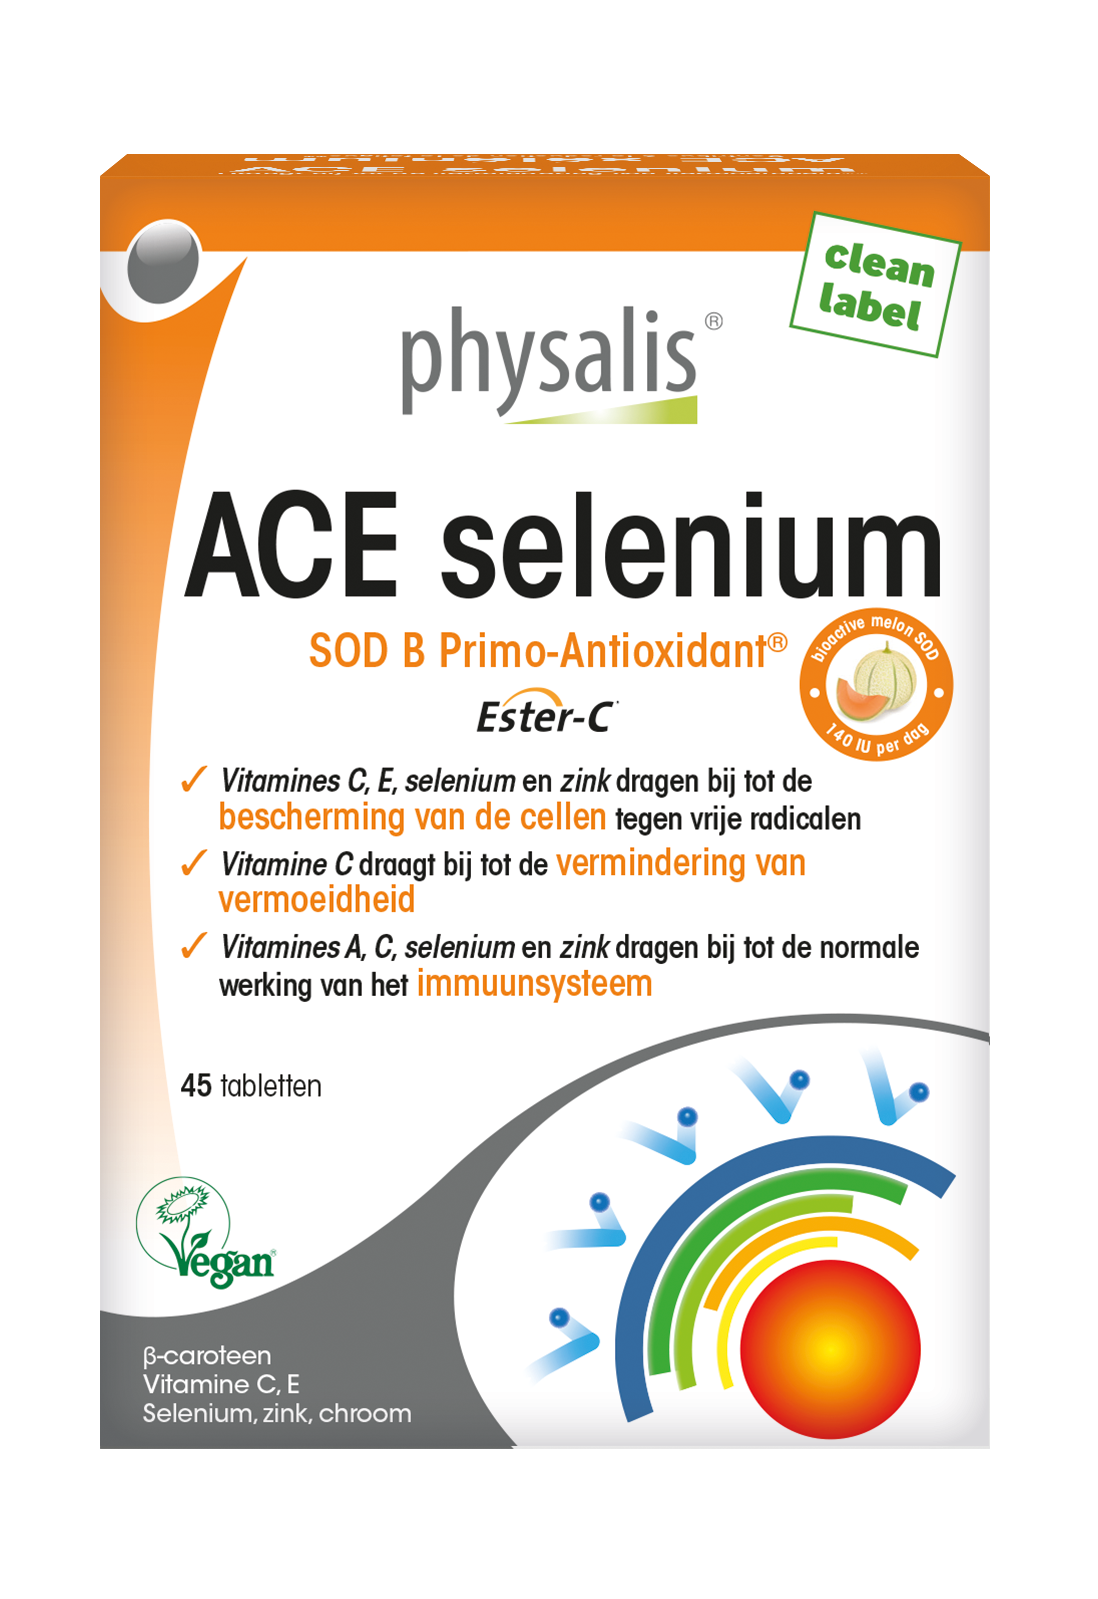 ACE selenium